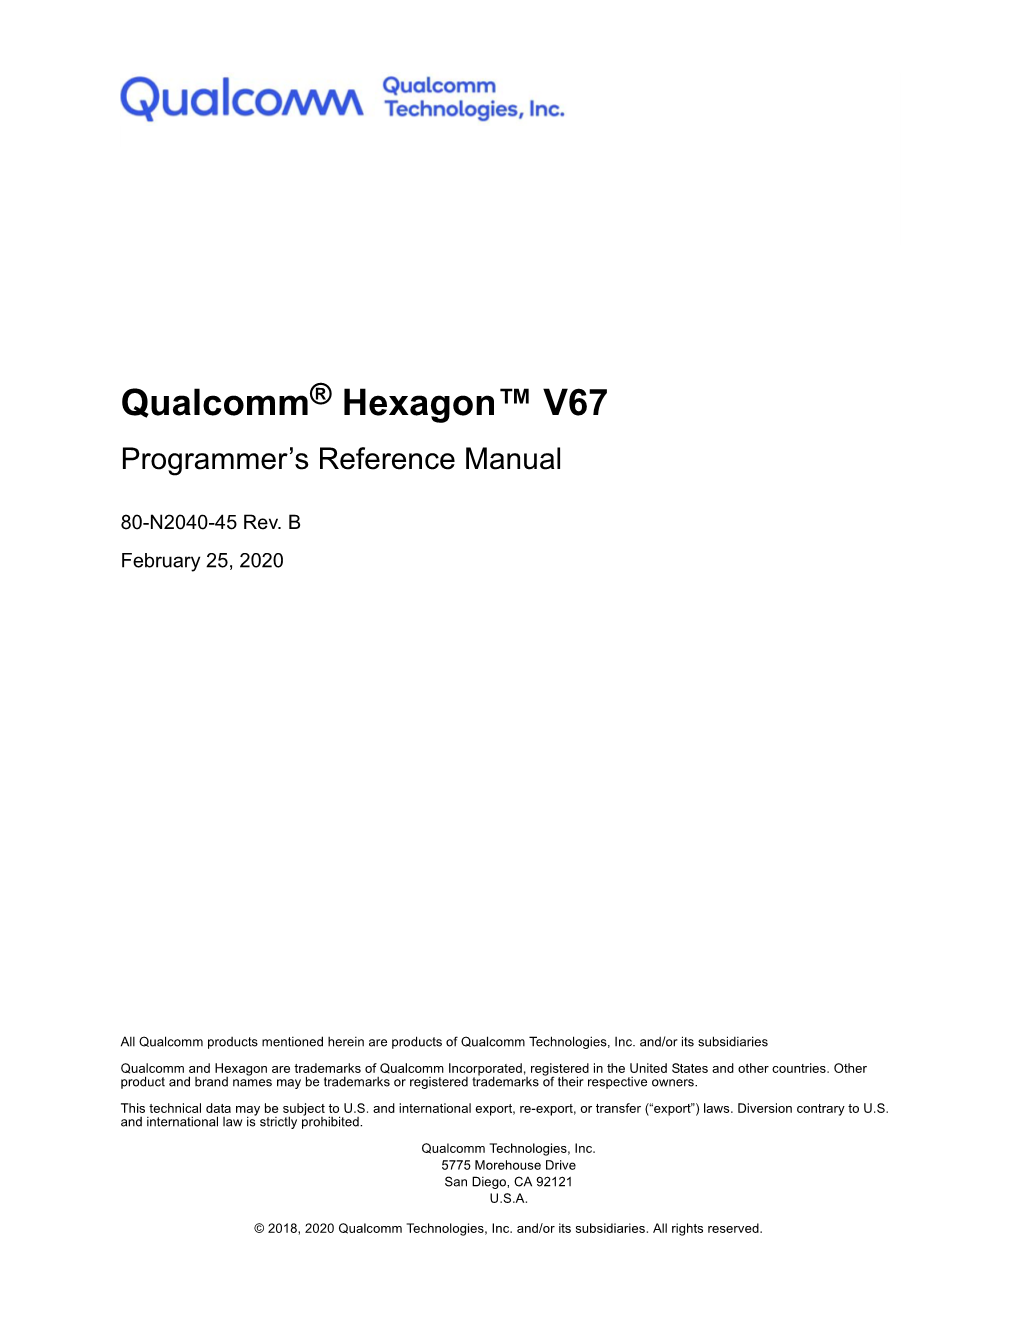 Qualcomm Hexagon V67 Programmer's Reference Manual